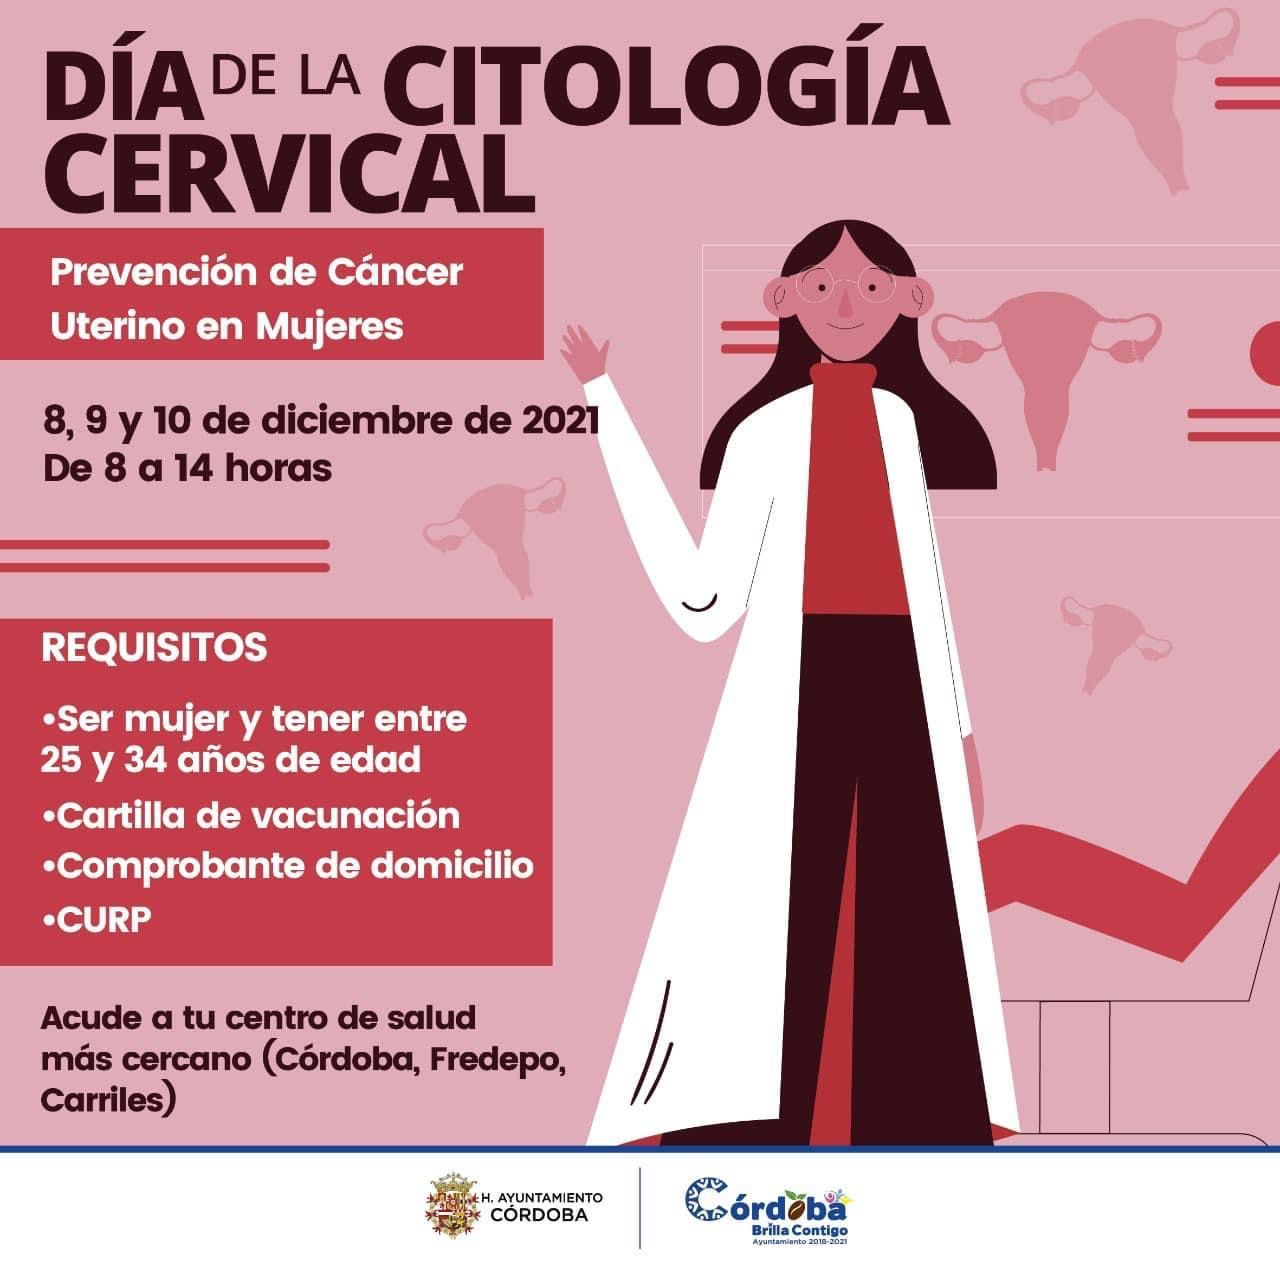 Practicarán pruebas de citología cervical a mujeres de 25 a 34 en Córdoba
